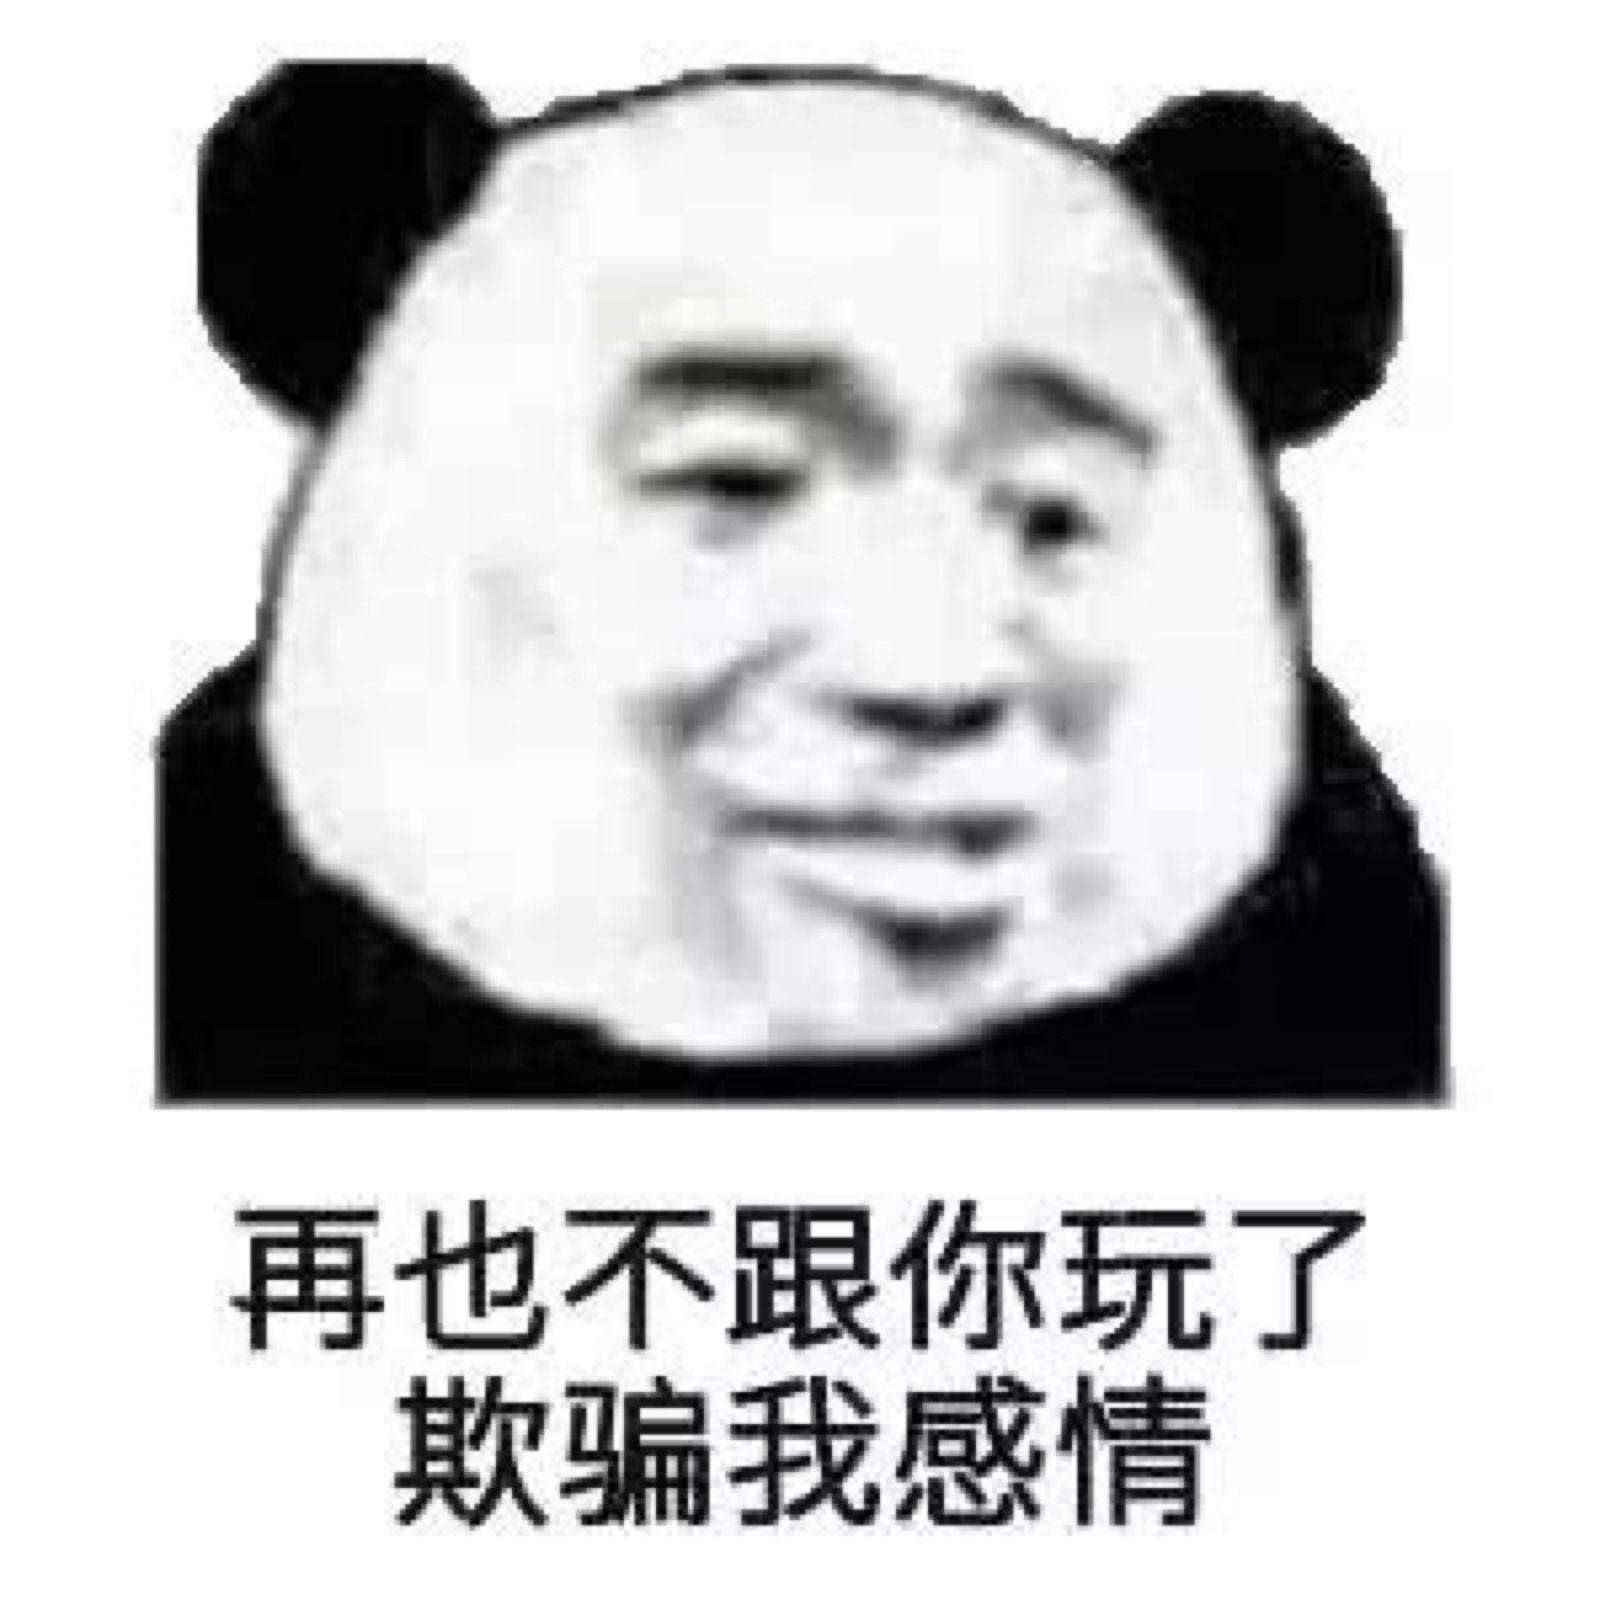 熊猫脸表情包 - tt98图片网